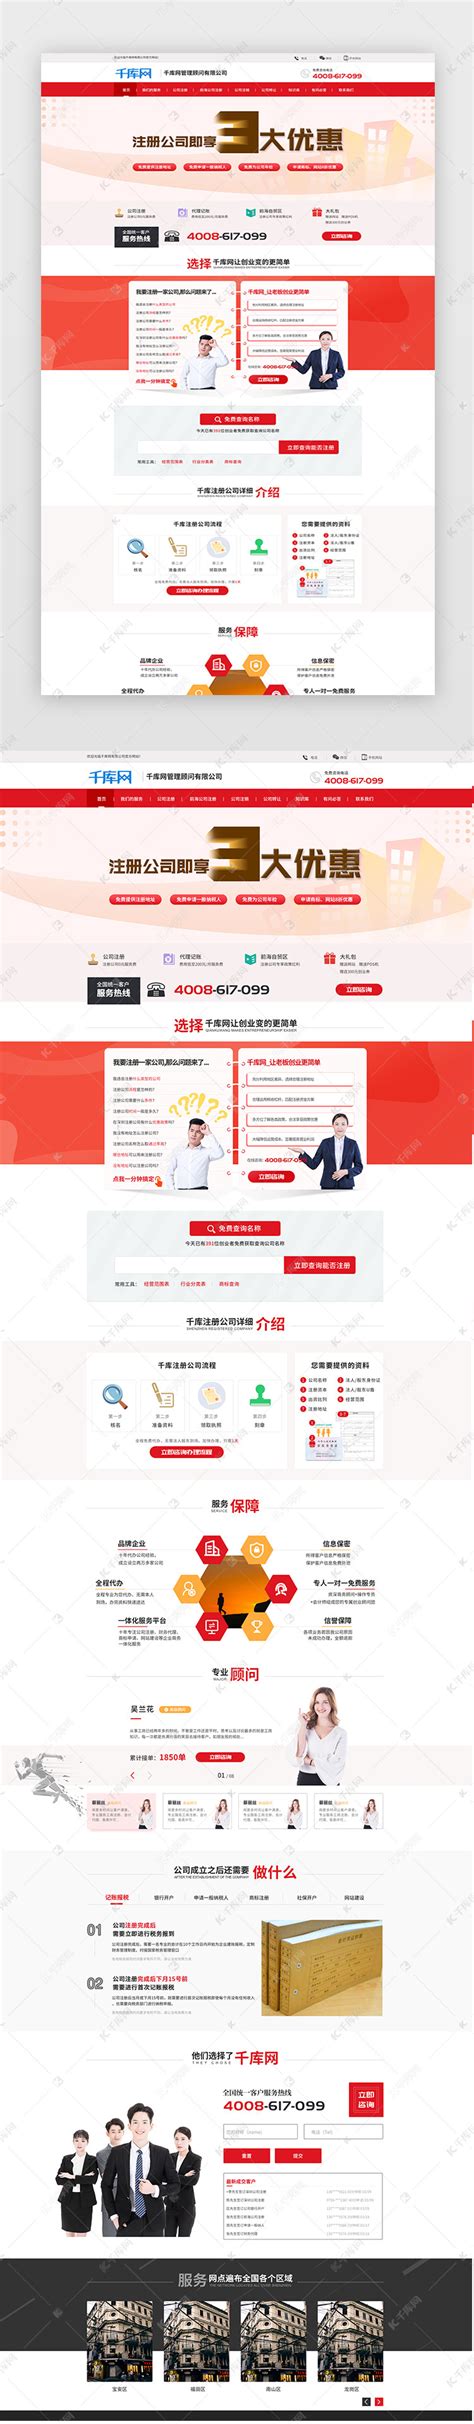 企业营销网站ui界面设计素材-千库网